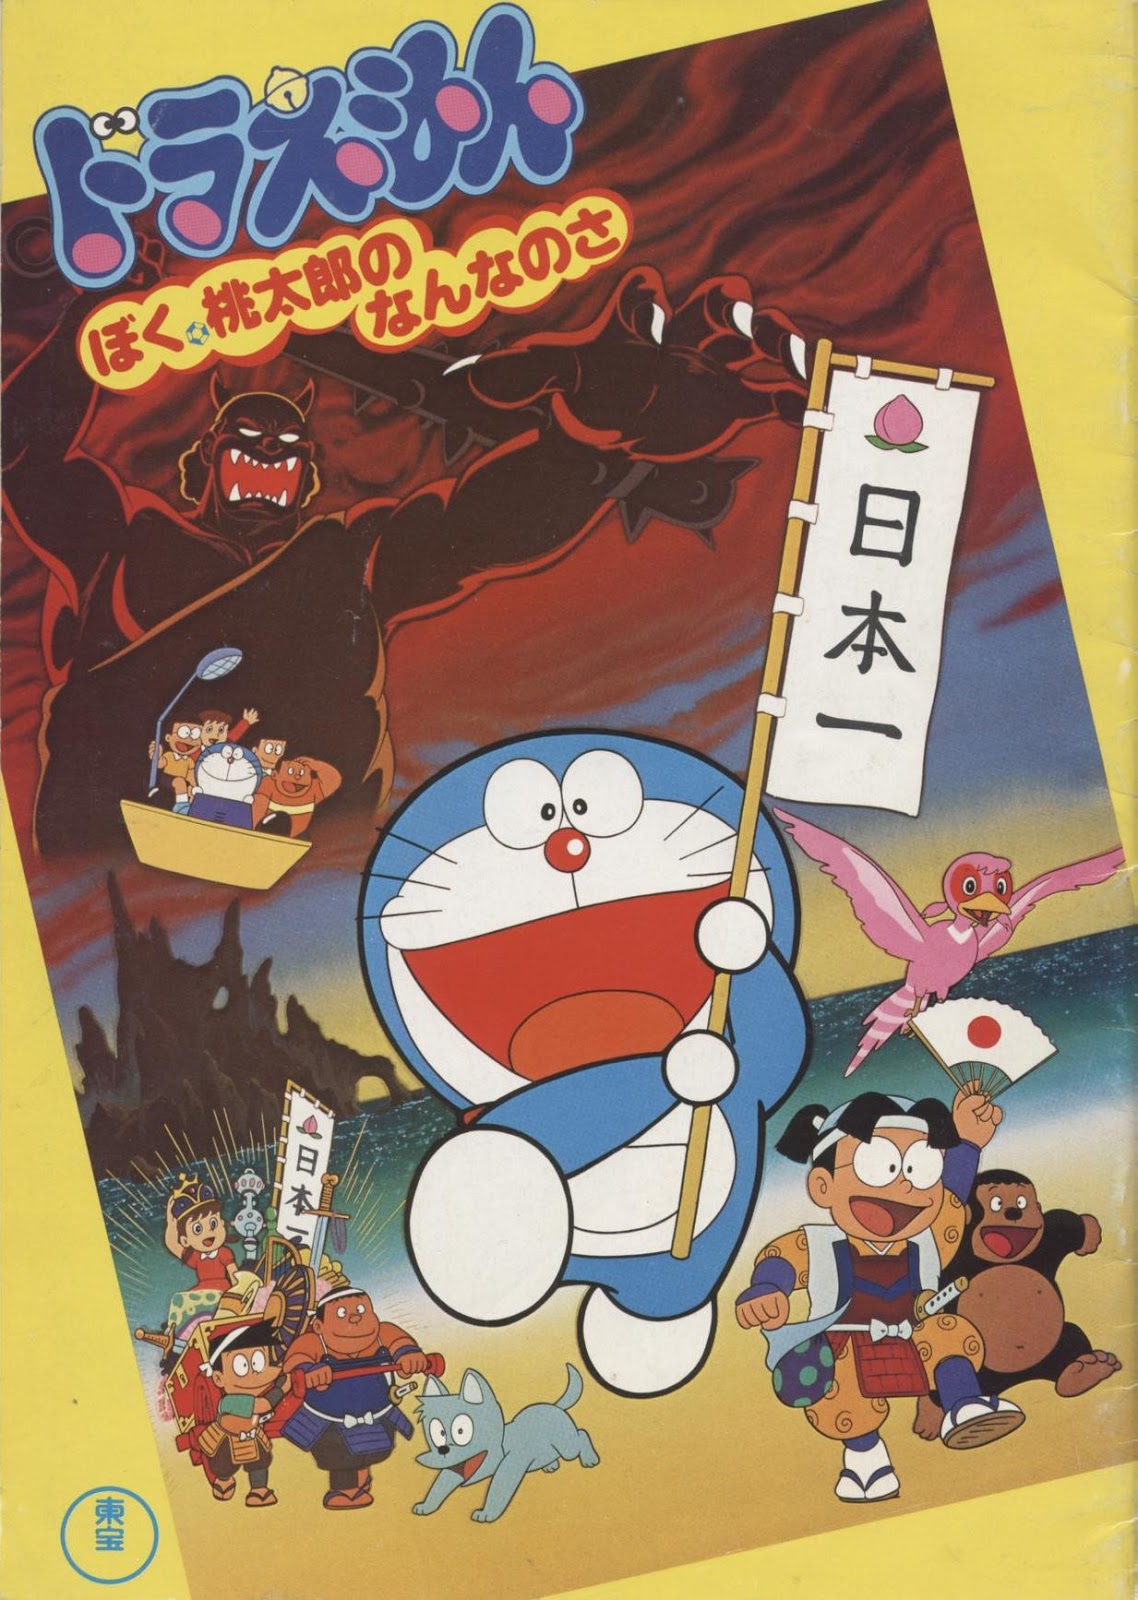 Xem Phim Doraemon Và Cậu Bé Quả Đào (Doraemon: Boku, Momotarou no Nanna no Sa)